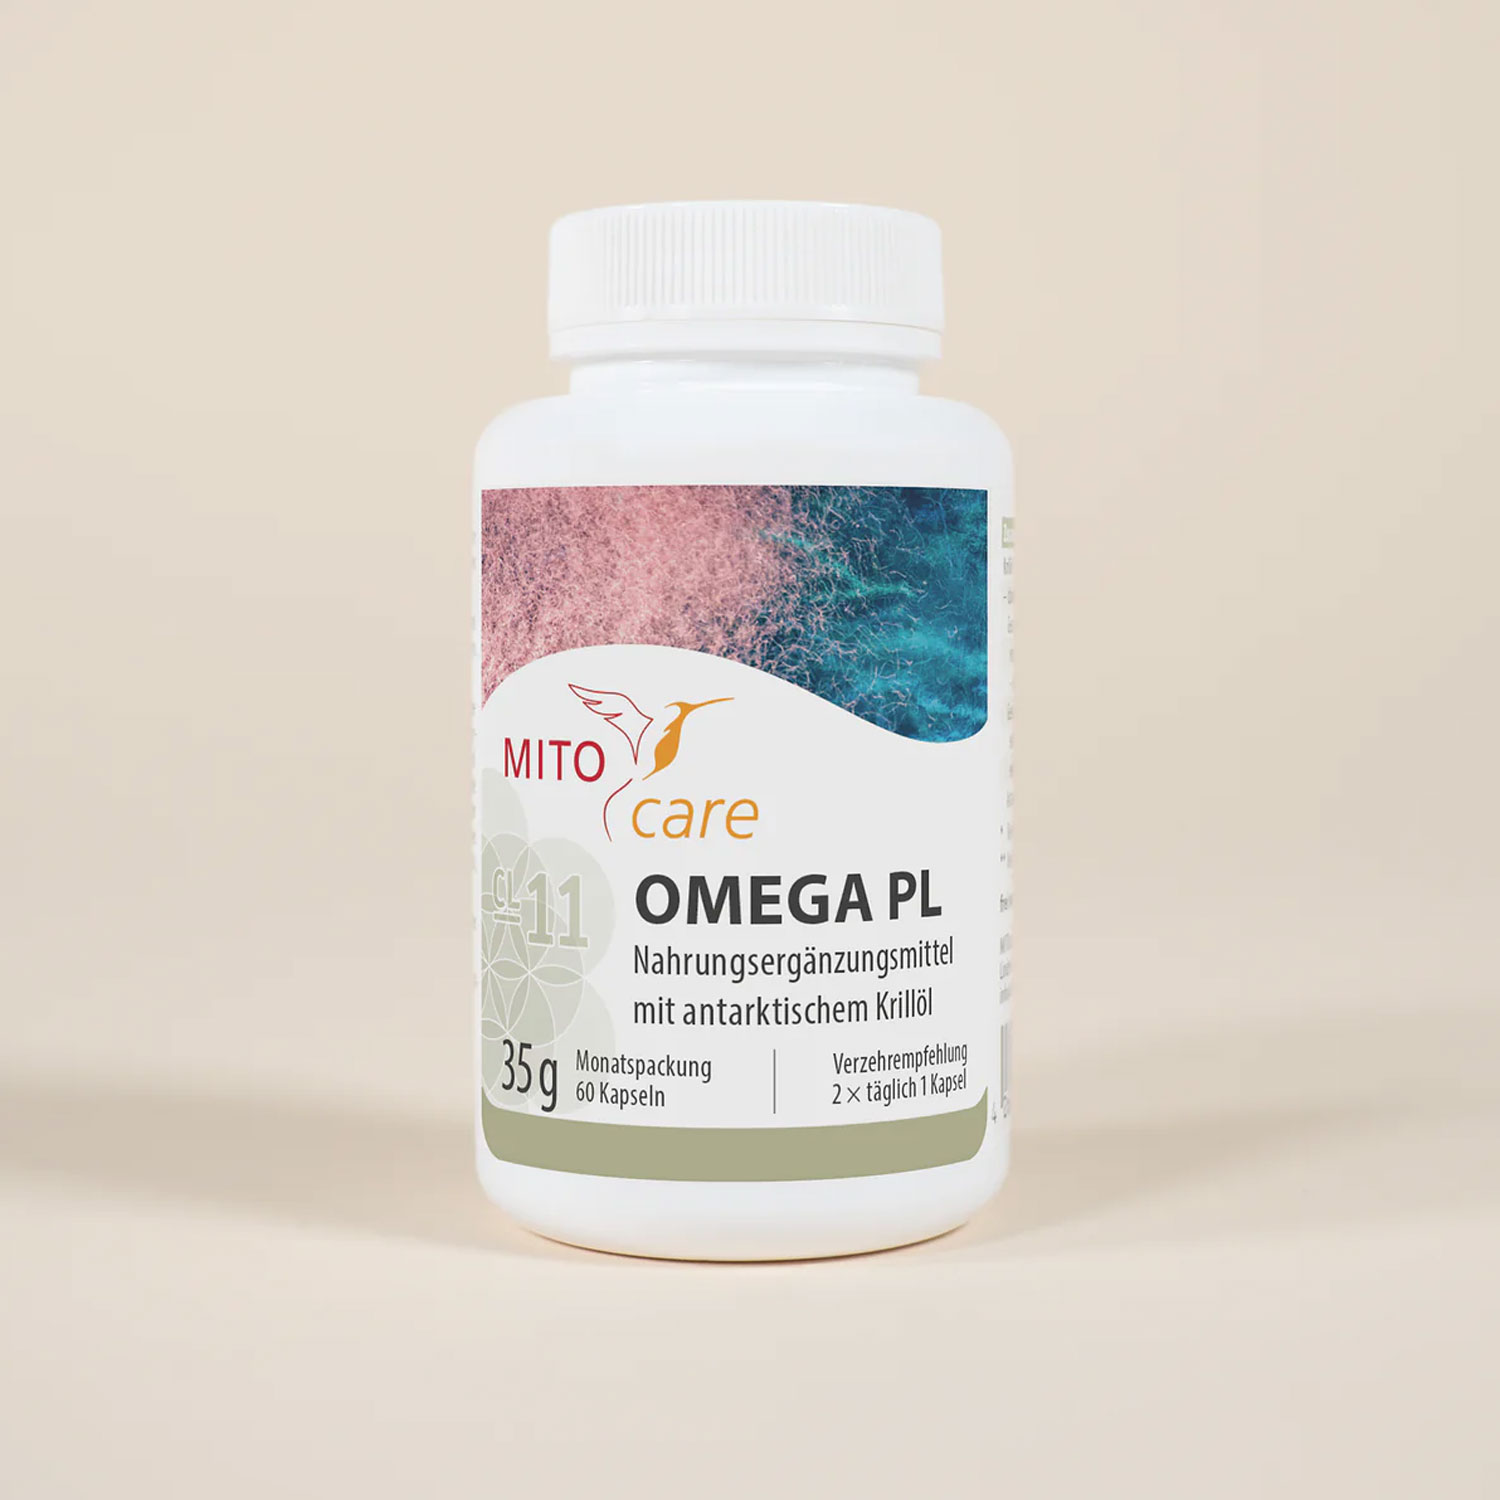 Omega PL von MITOcare - Dose Etikett vorn